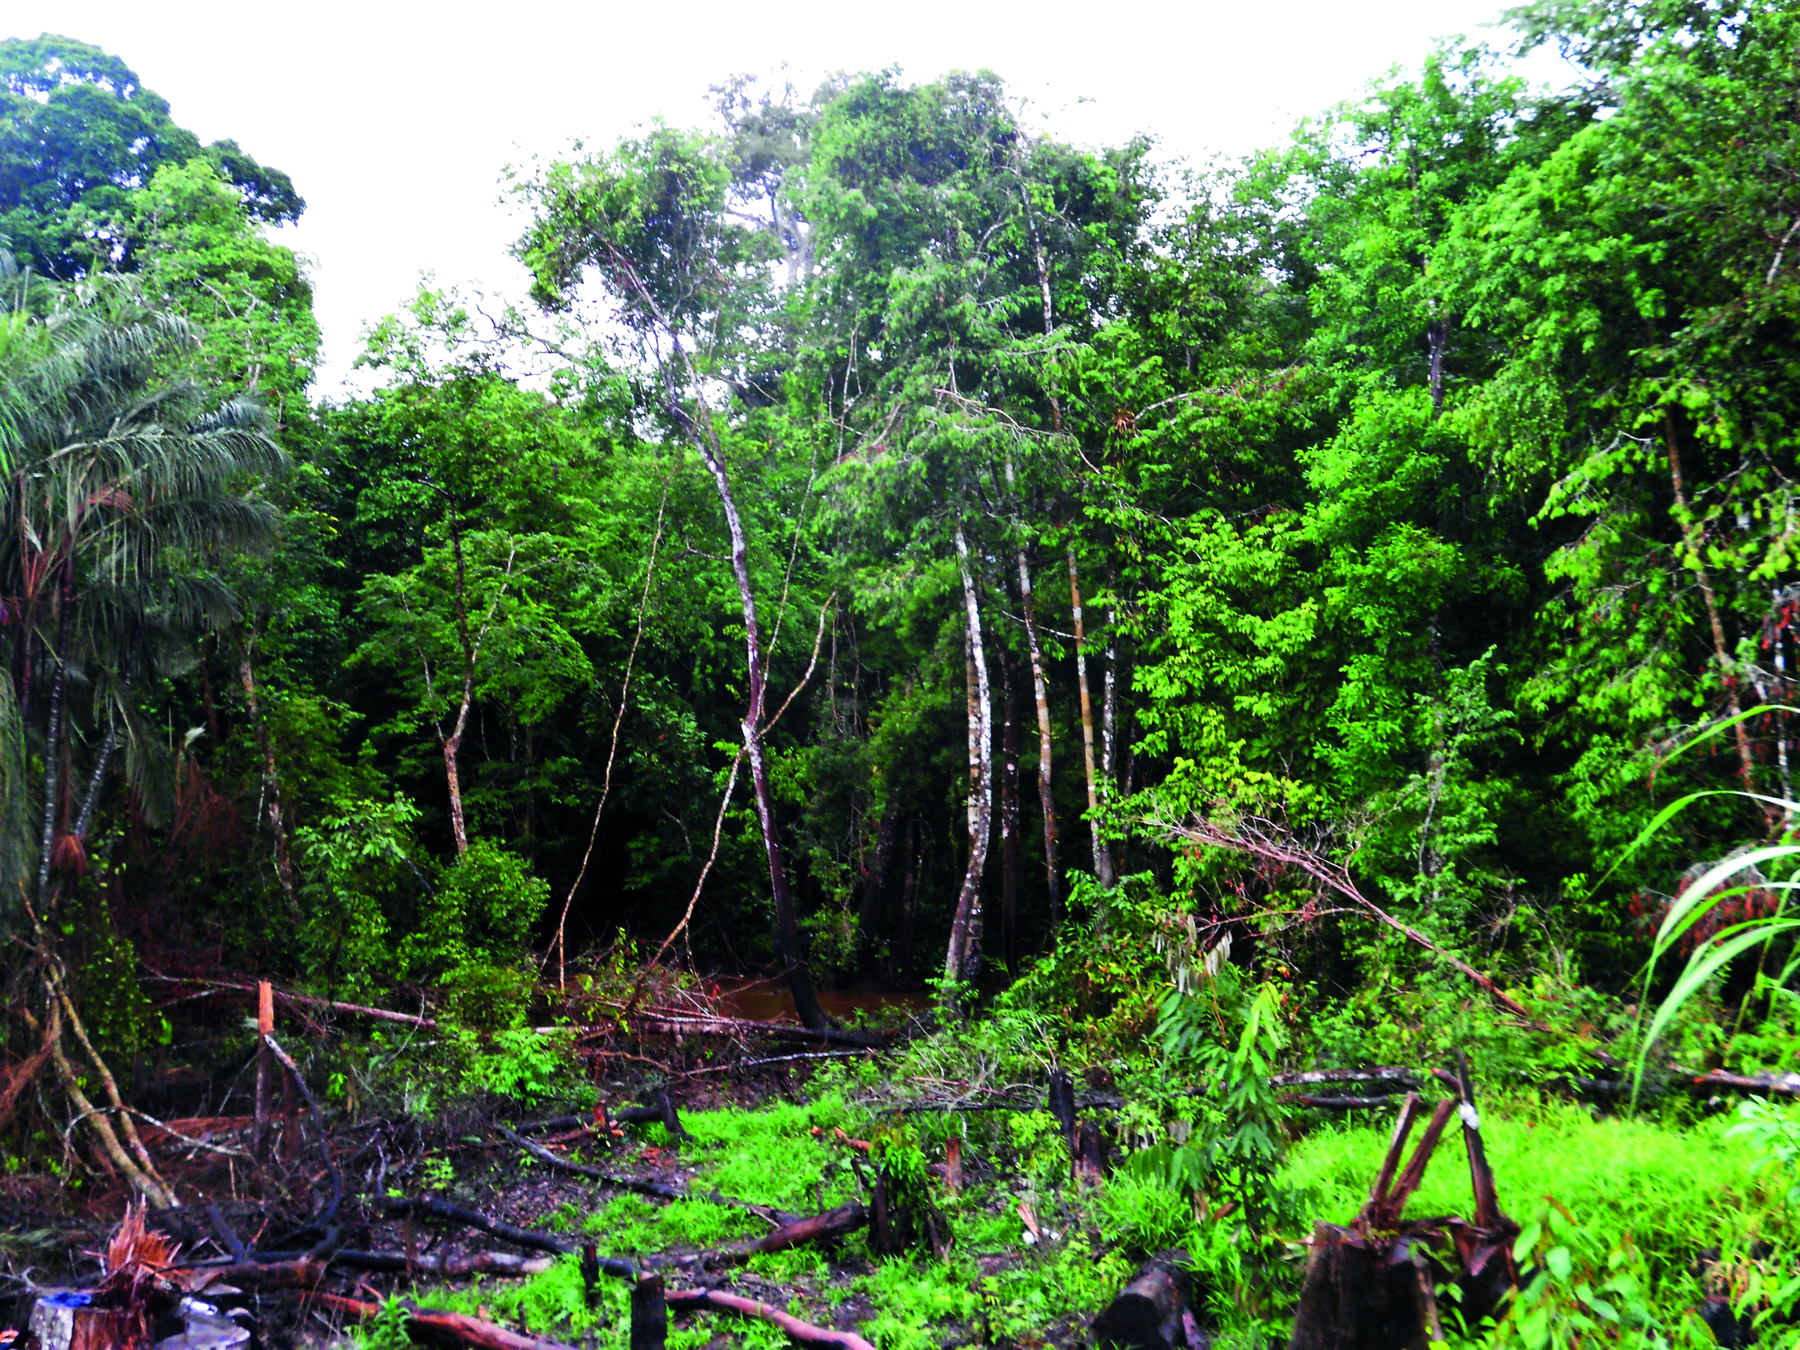 Fotografia. Floresta tropical de vegetação exuberante. No centro há uma área desmatada, com troncos de árvores derrubadas sobre o terreno.